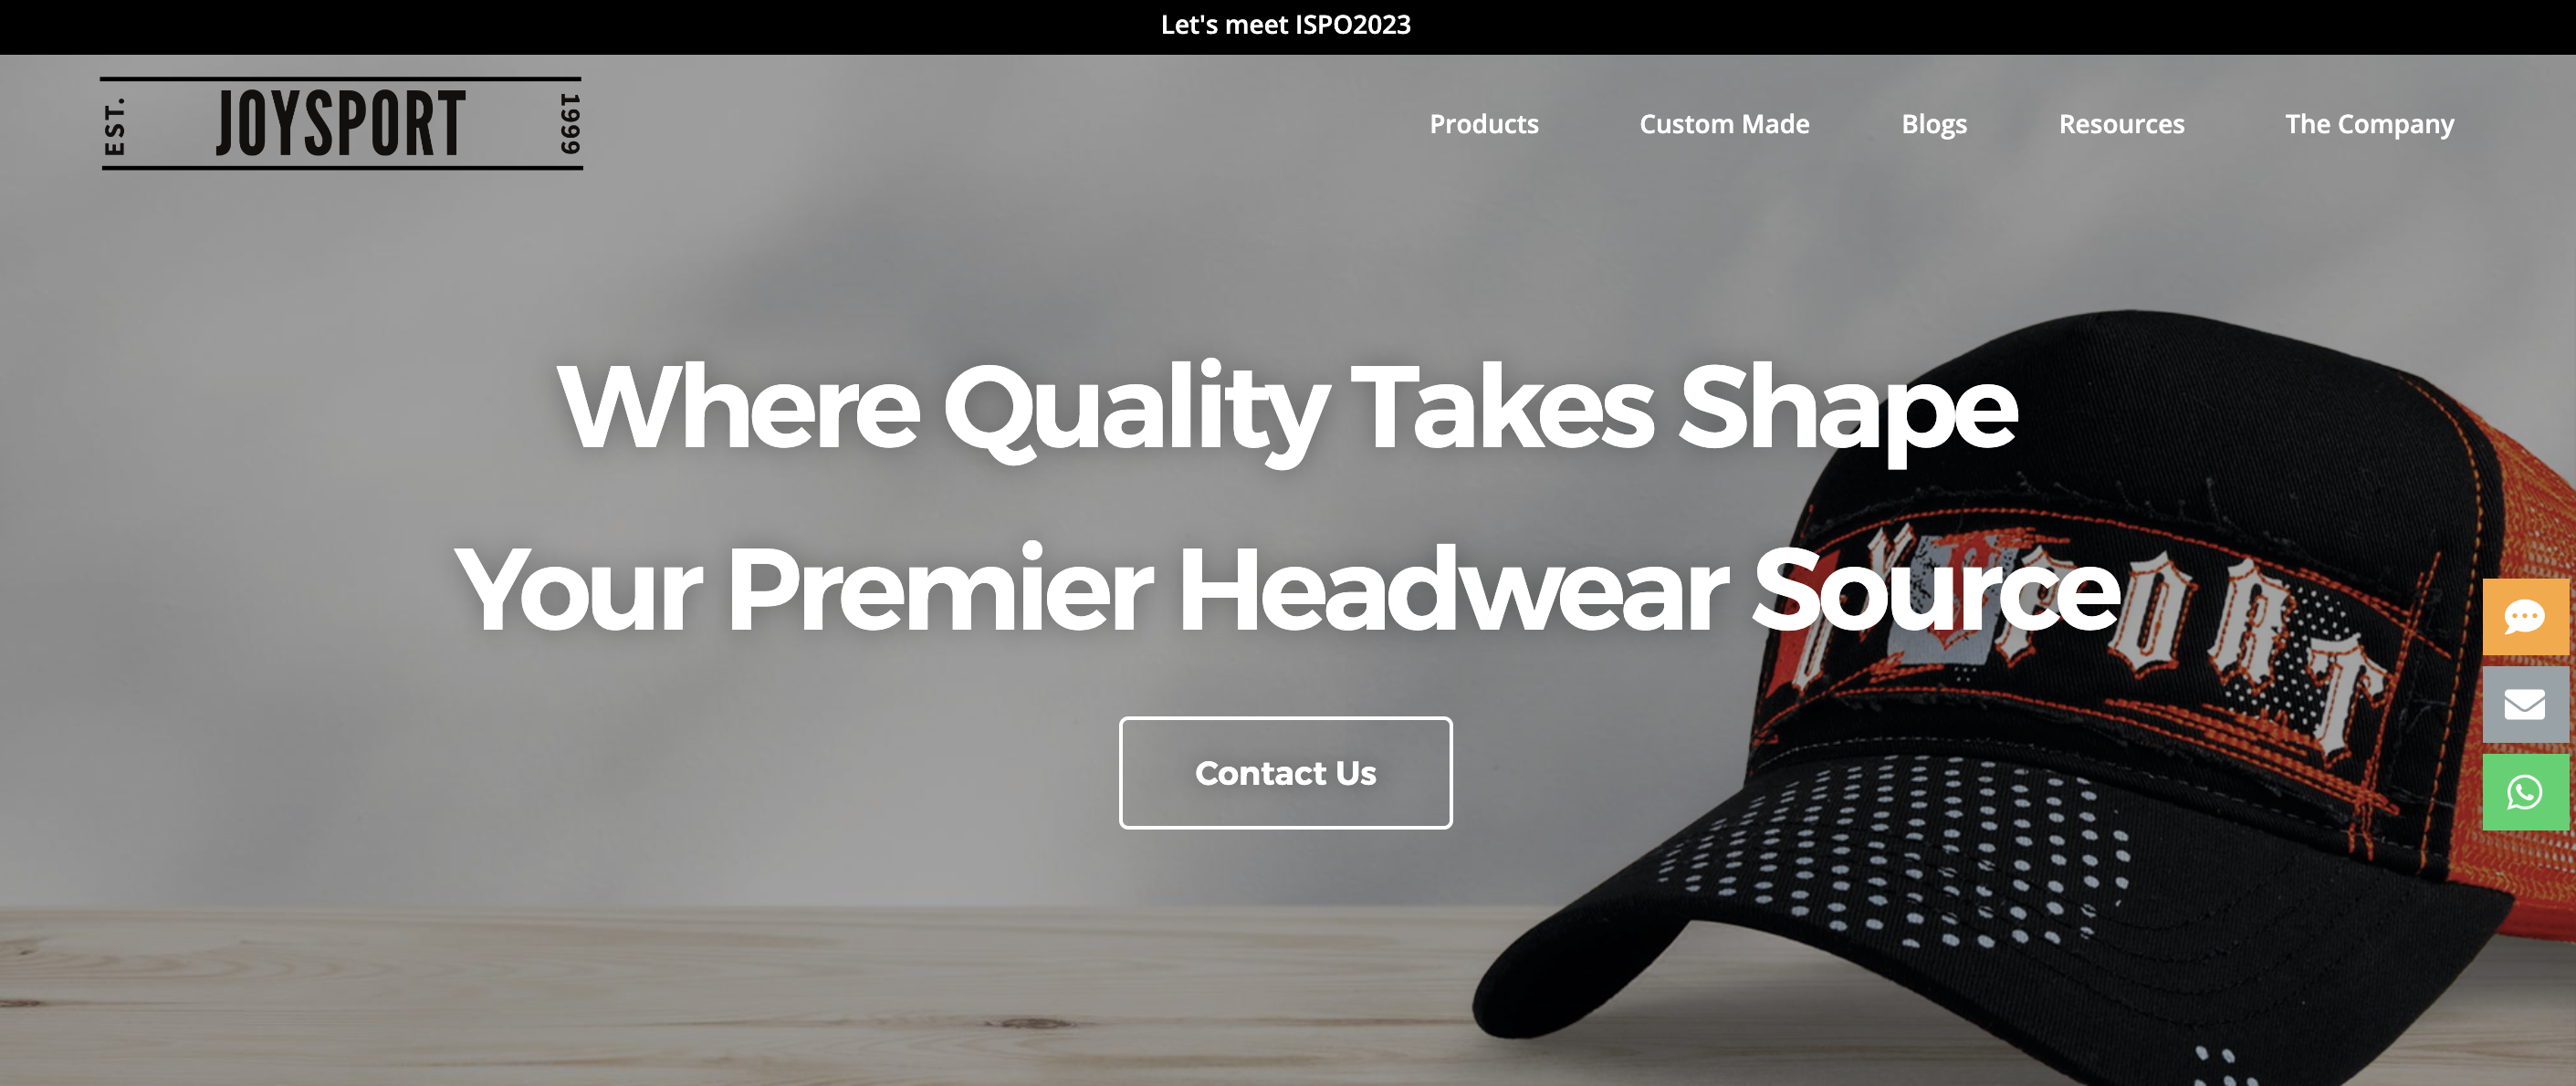 Website of Joyport headwear company